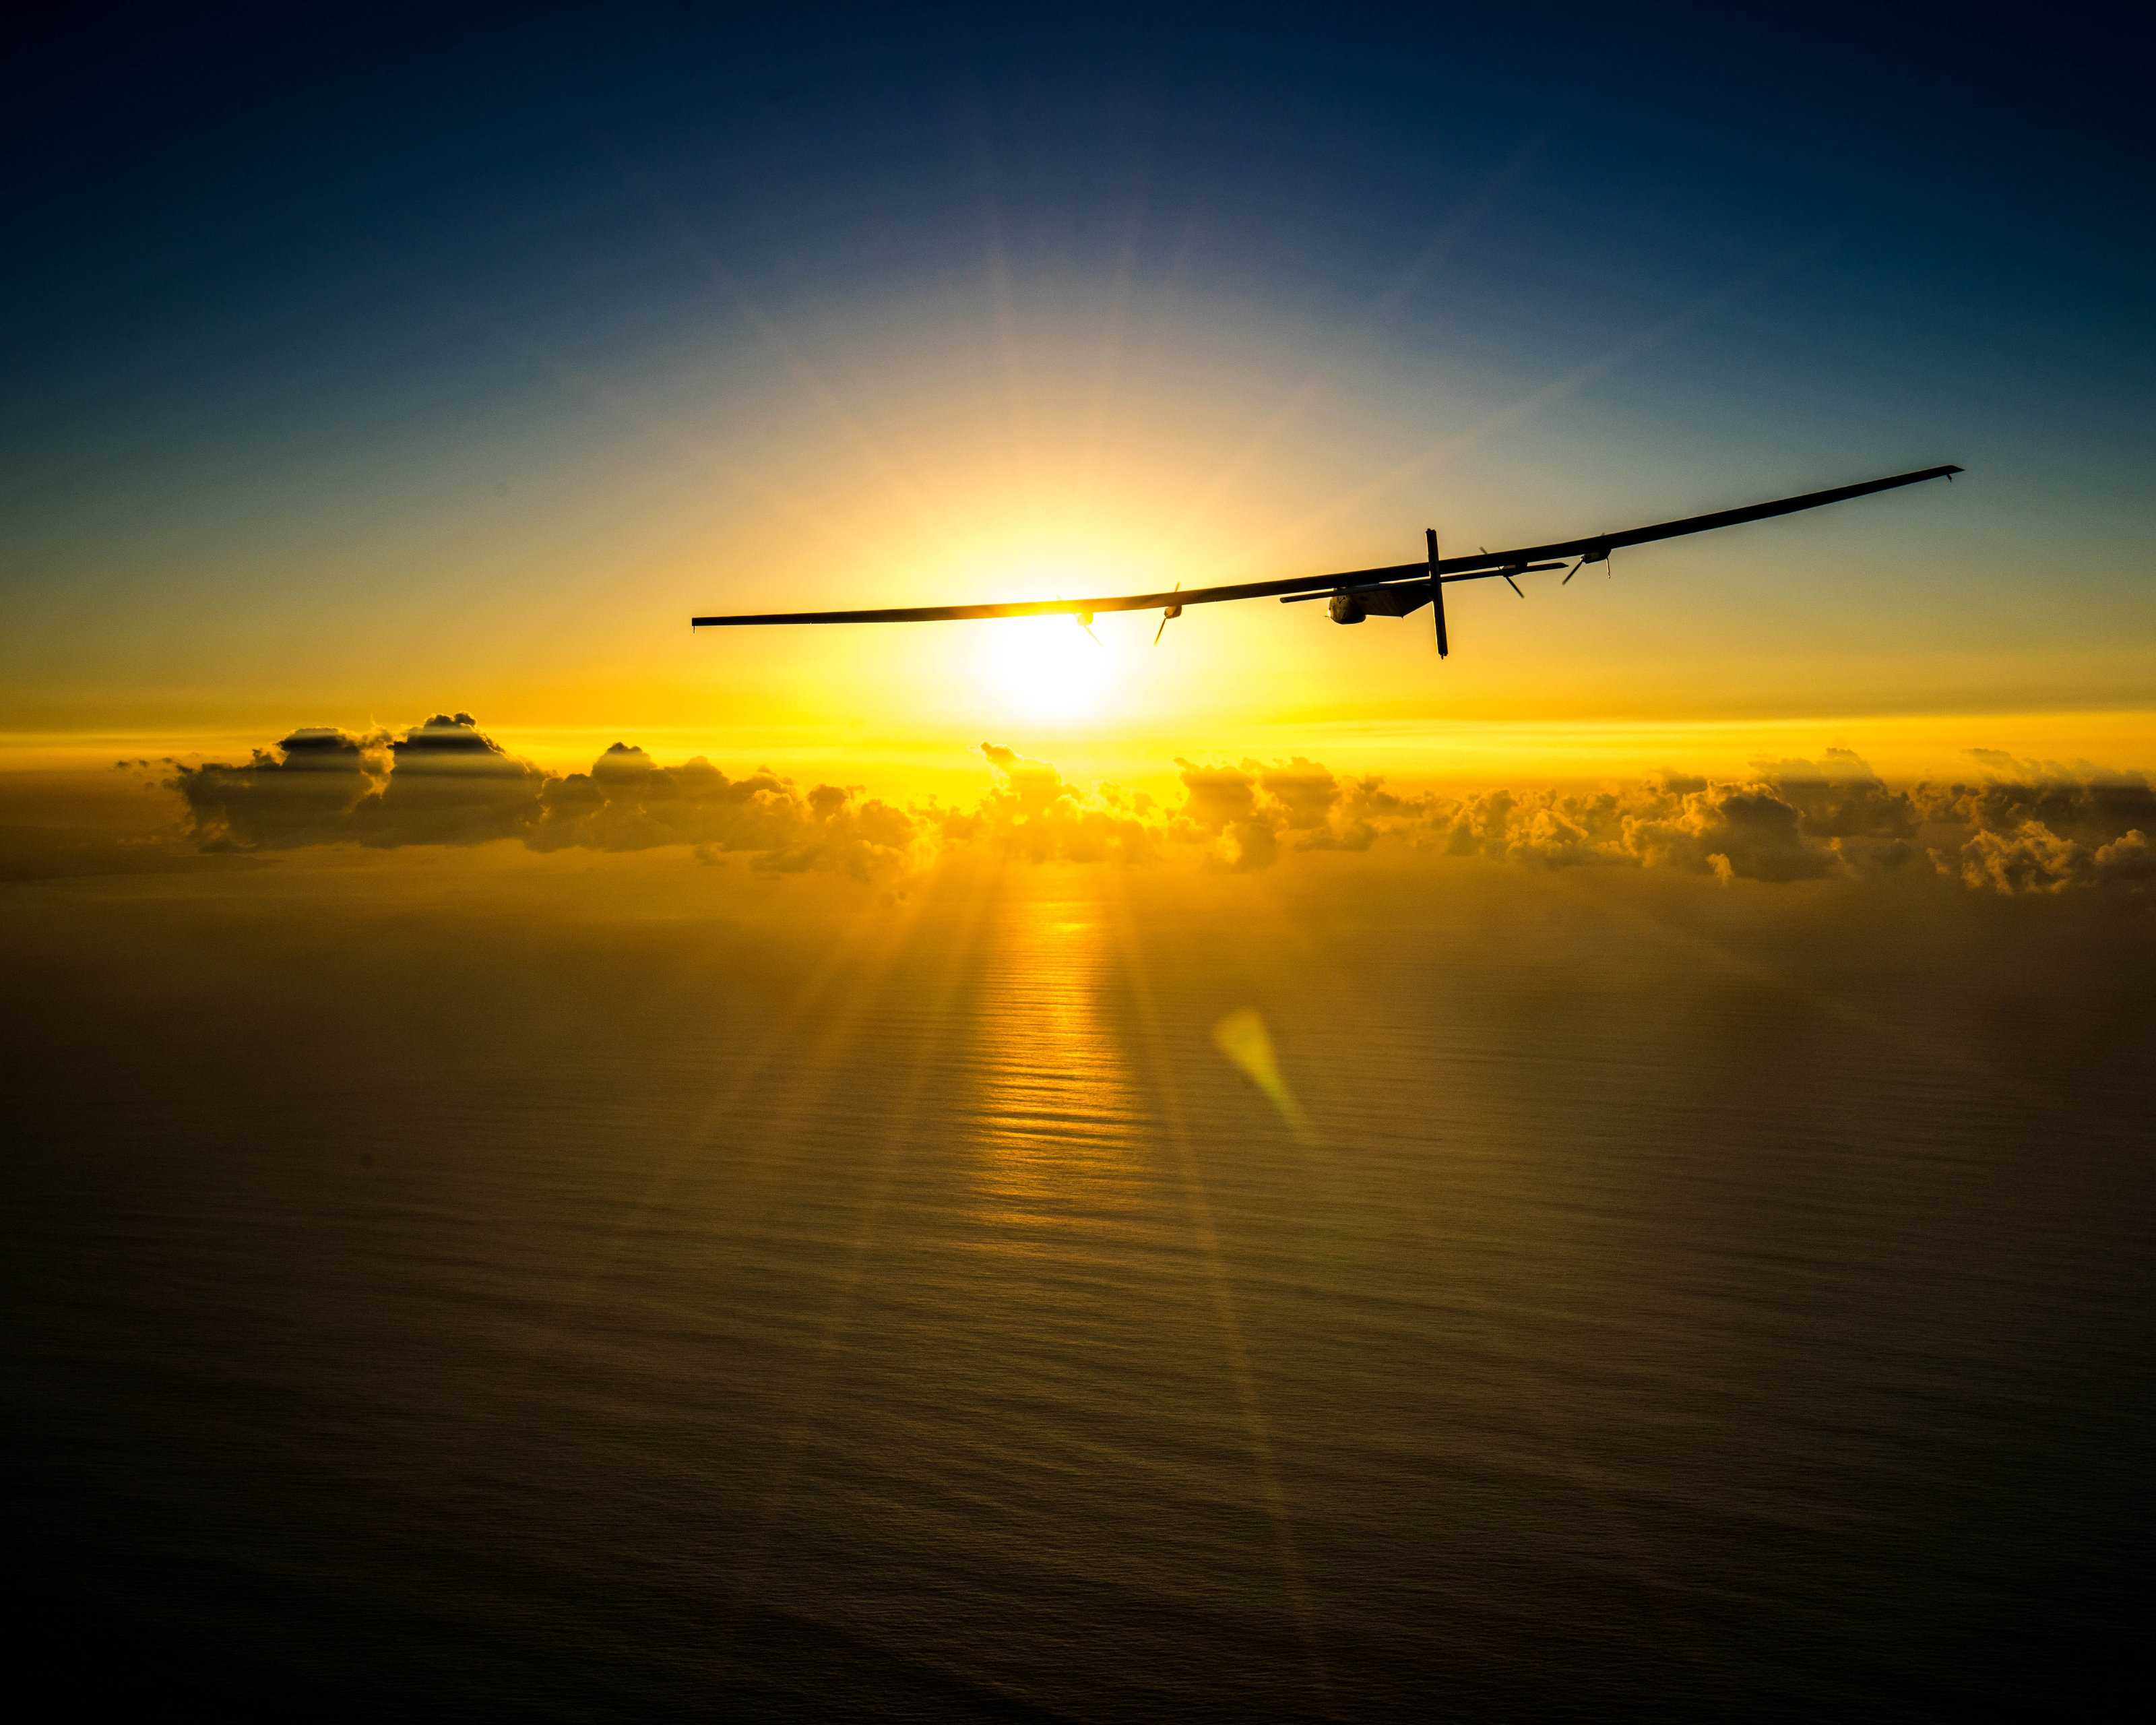 BG_SolarImpulse2_20160226_RTW_Maintenance_Flight_Hawaii_JeanRevillard-26 | © Jean Revillard